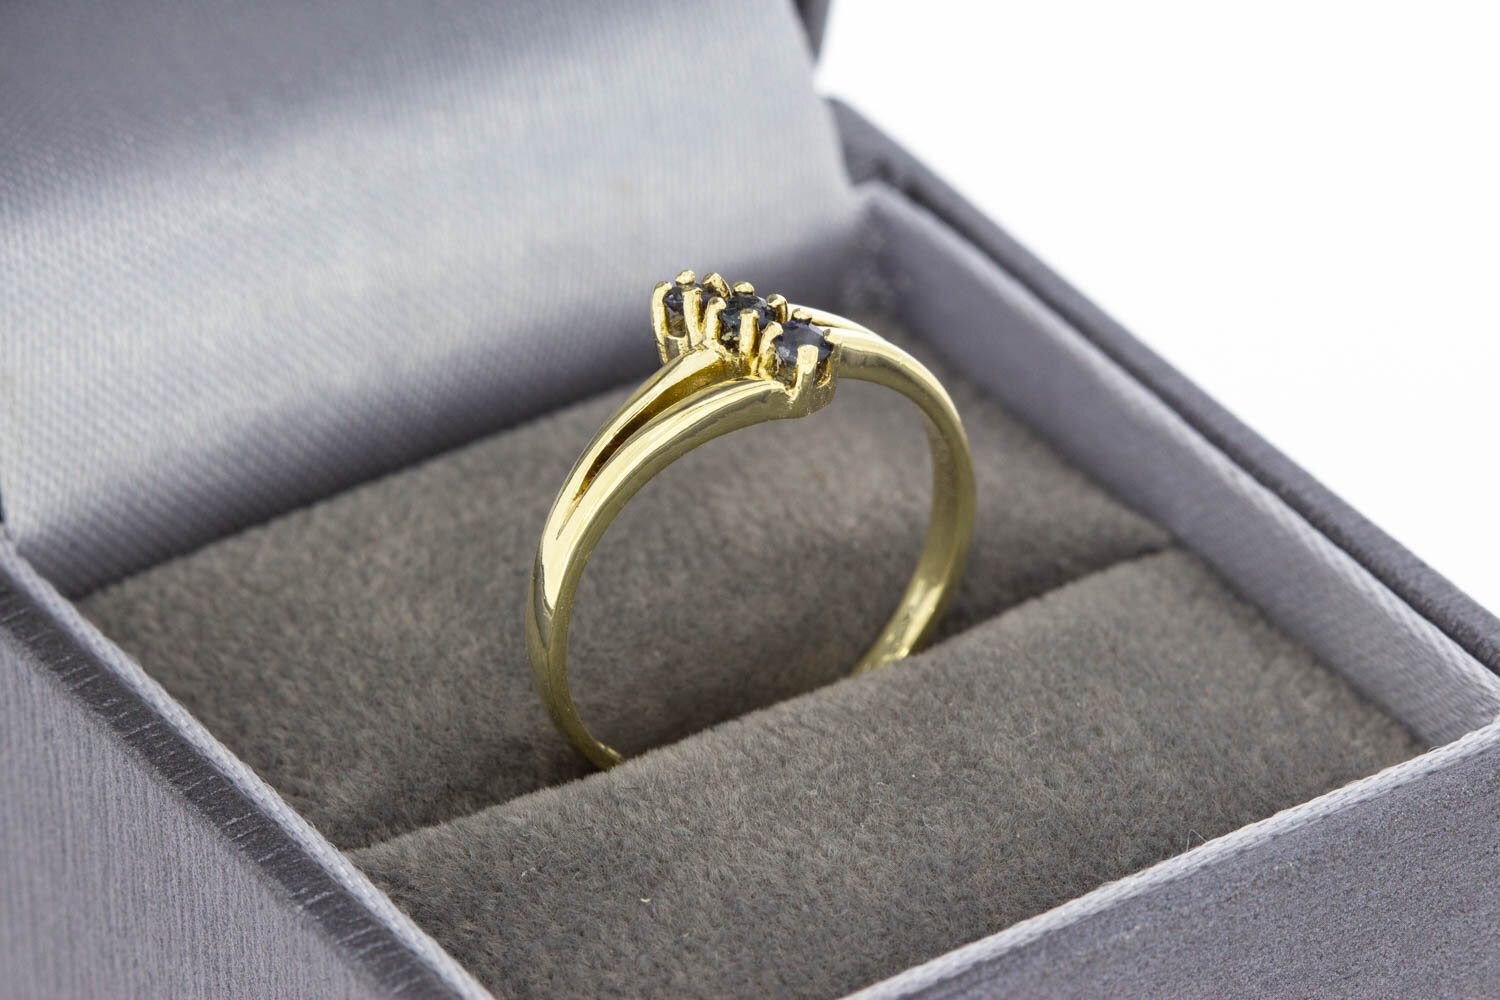 Vintage Saphir geschwungene ring 14 Karat Gold - 17,5 mm